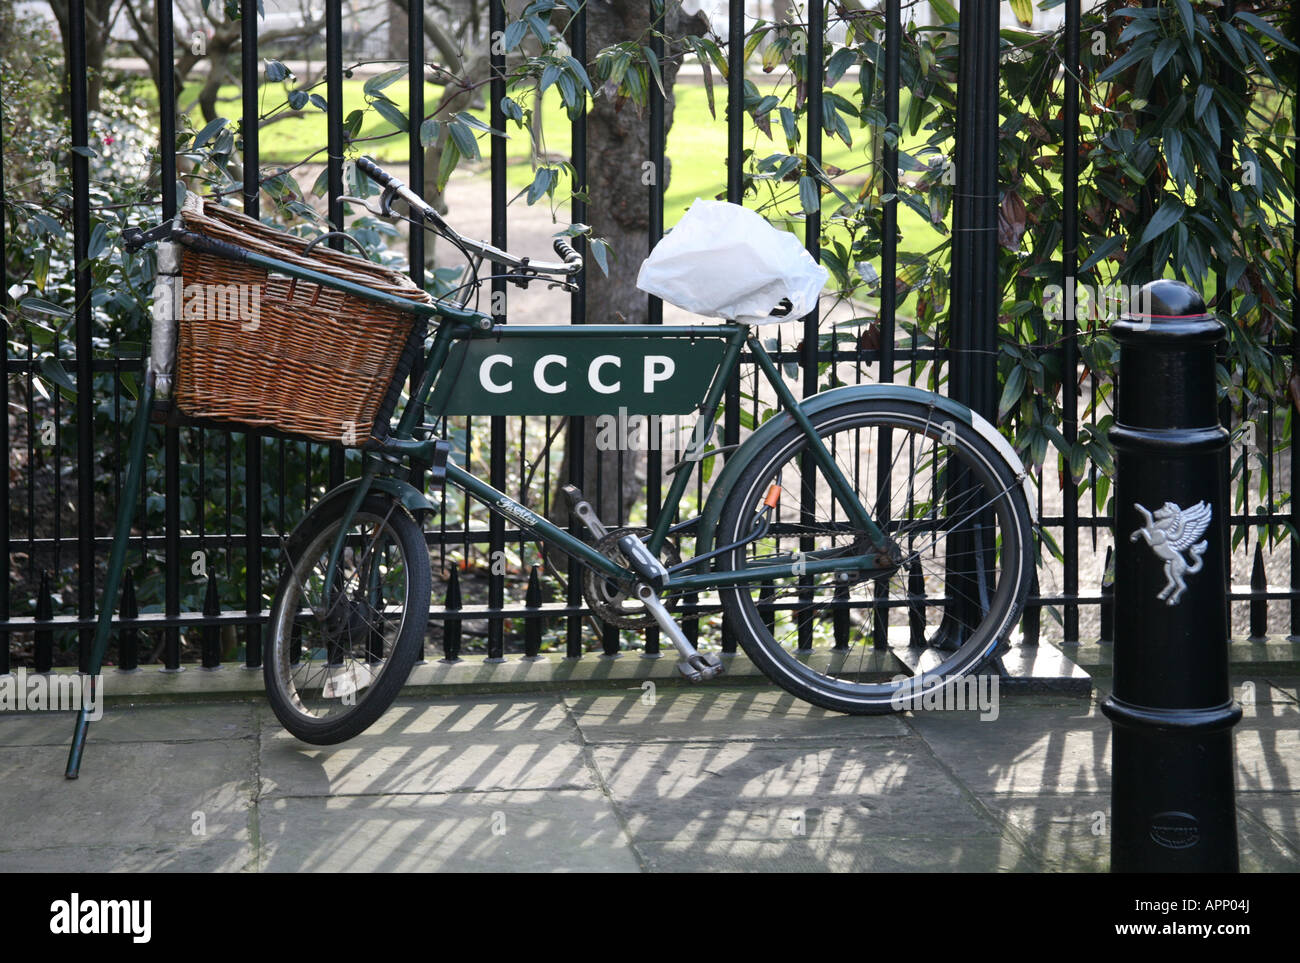 CCCP bike Stock Photo